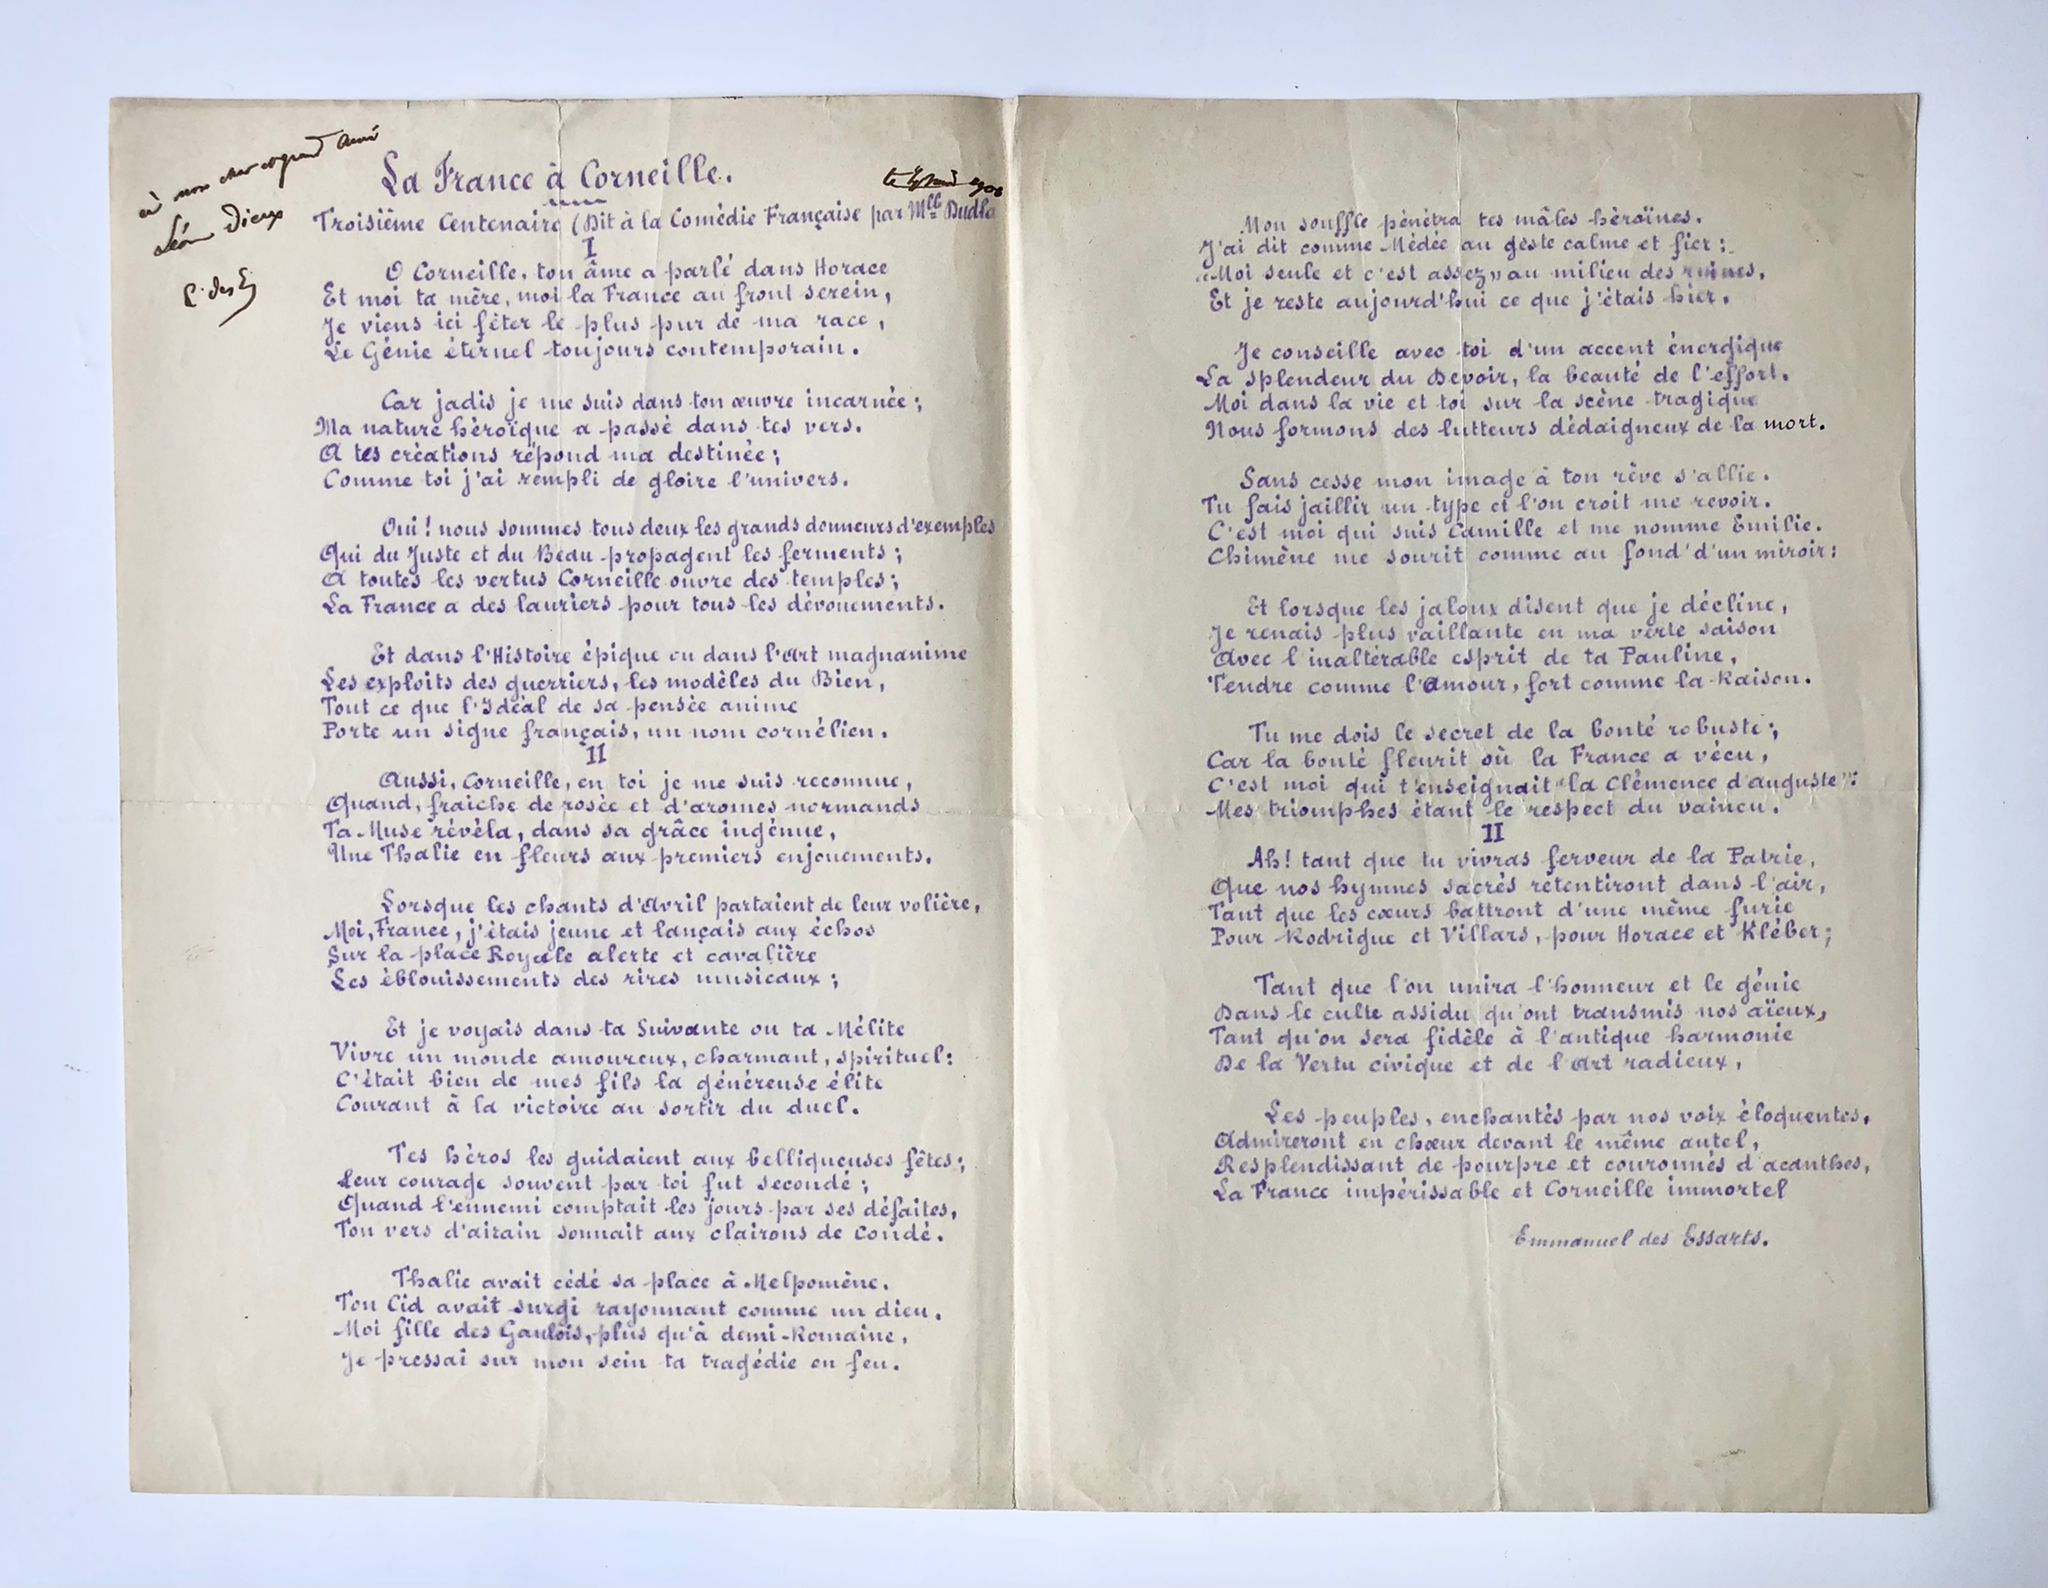  - [France, 1906] Gedicht 'La France a Corneille' door Emmanuel des Essarts. Lichtdruk van handschrift, folio, 2 pag. Met opdracht in pen van Des Essarts aan Leon Dierx, 1906.